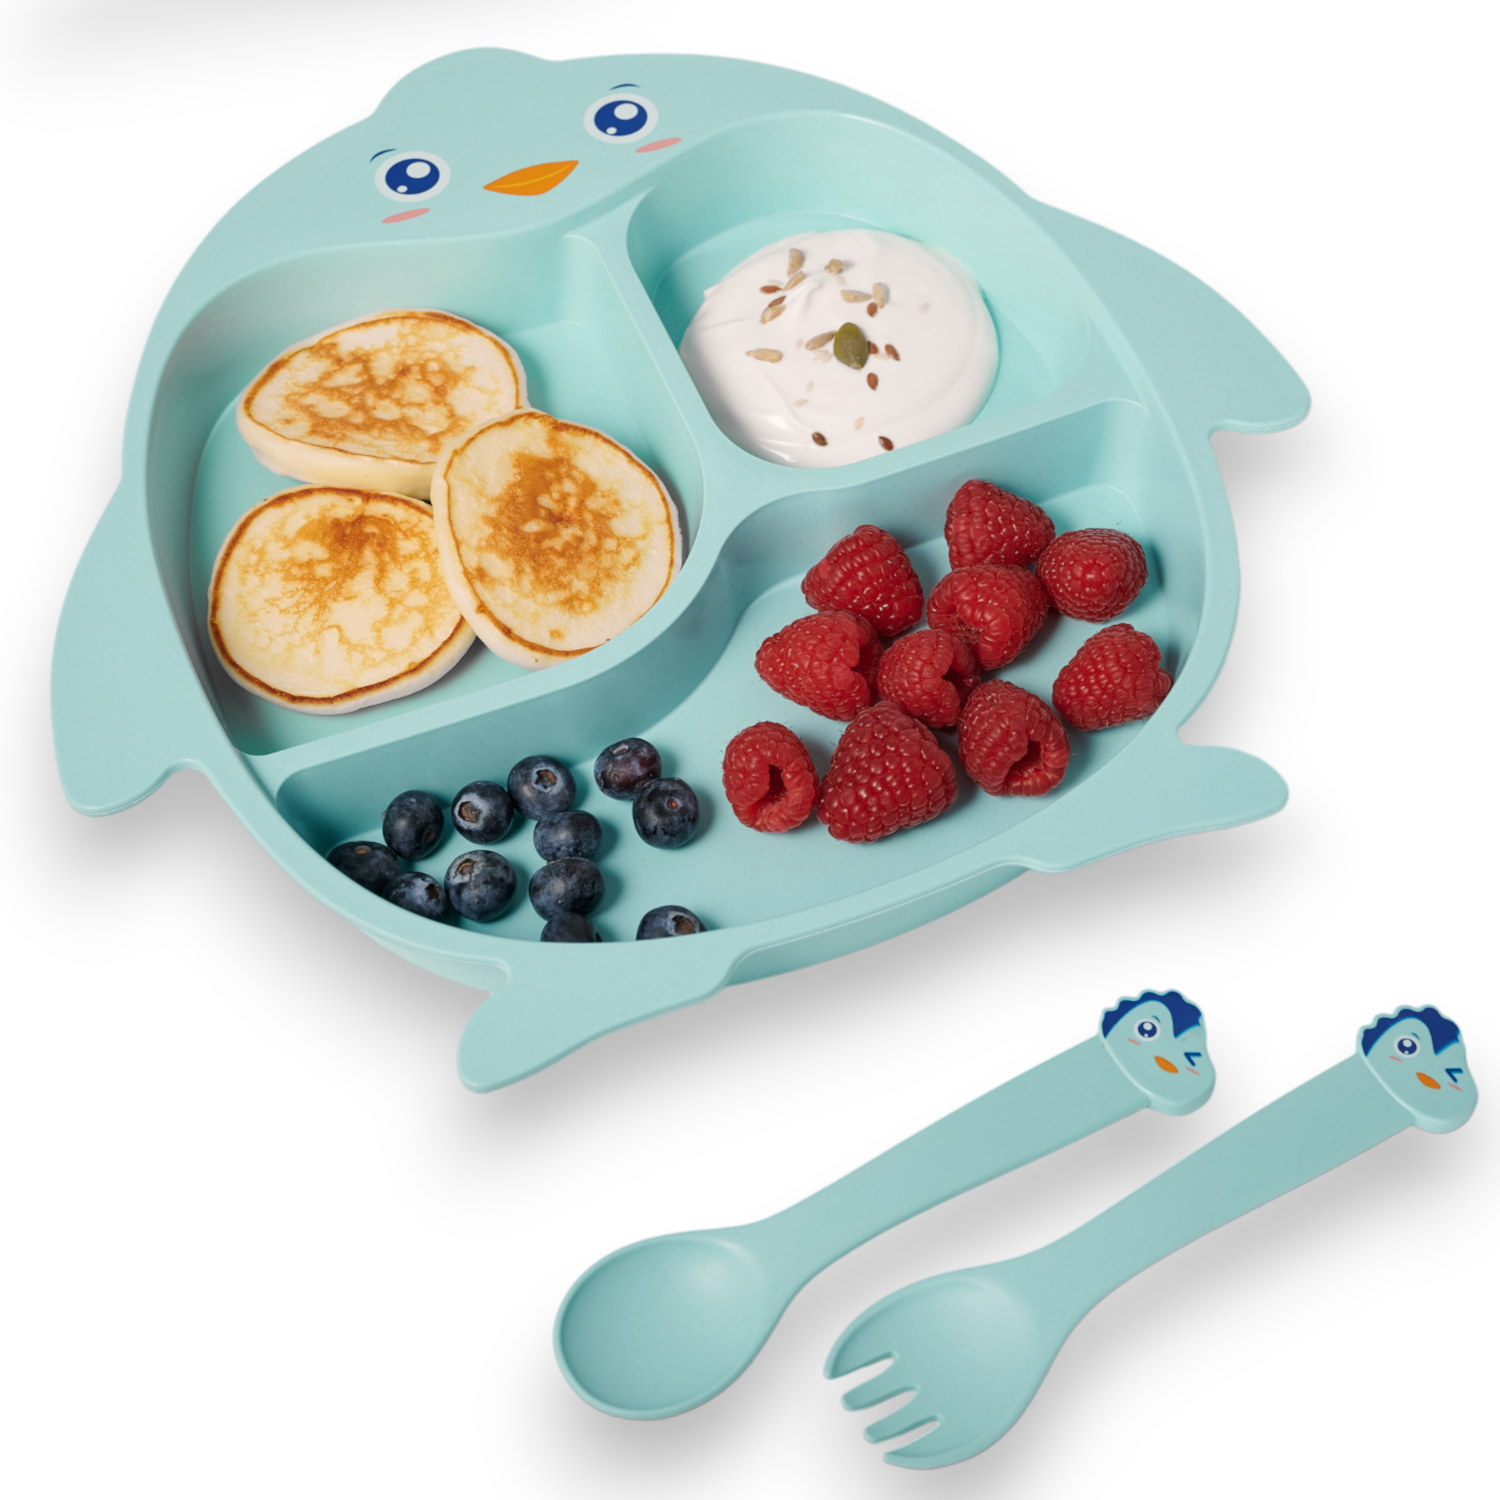 Детская посуда для кормления Добрый Филин Пингвинёнок тарелка, ложка, вилка, палочки детская посуда для кормления добрый филин коровка тарелка ложка вилка палочки бежевая